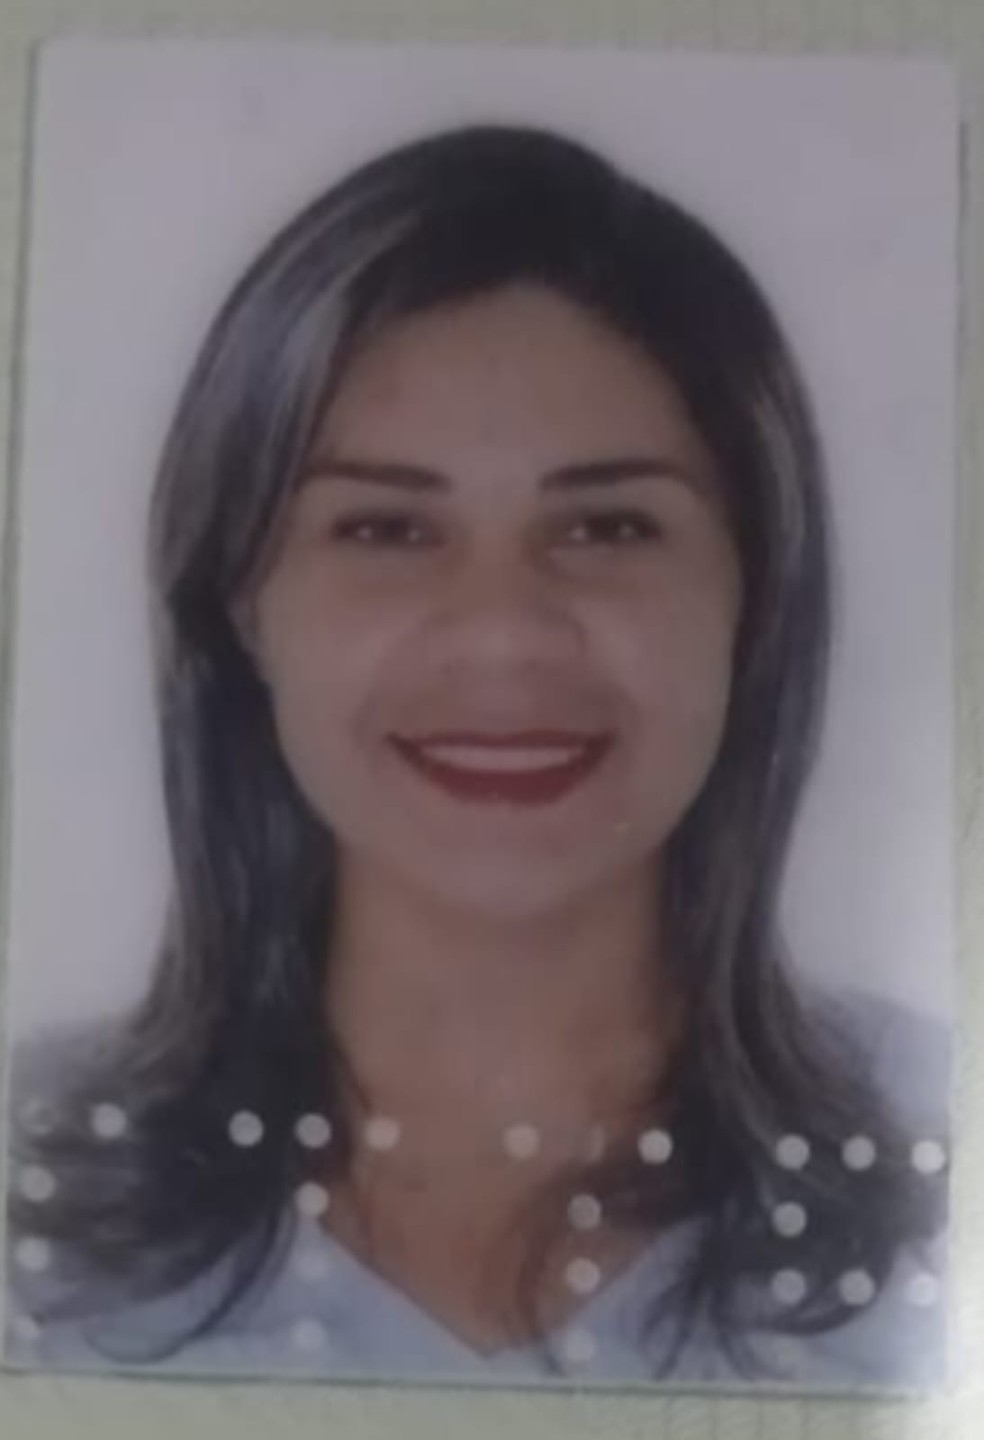 Vítima de homicídio em Caruaru — Foto: Caruaru no Face/Reprodução